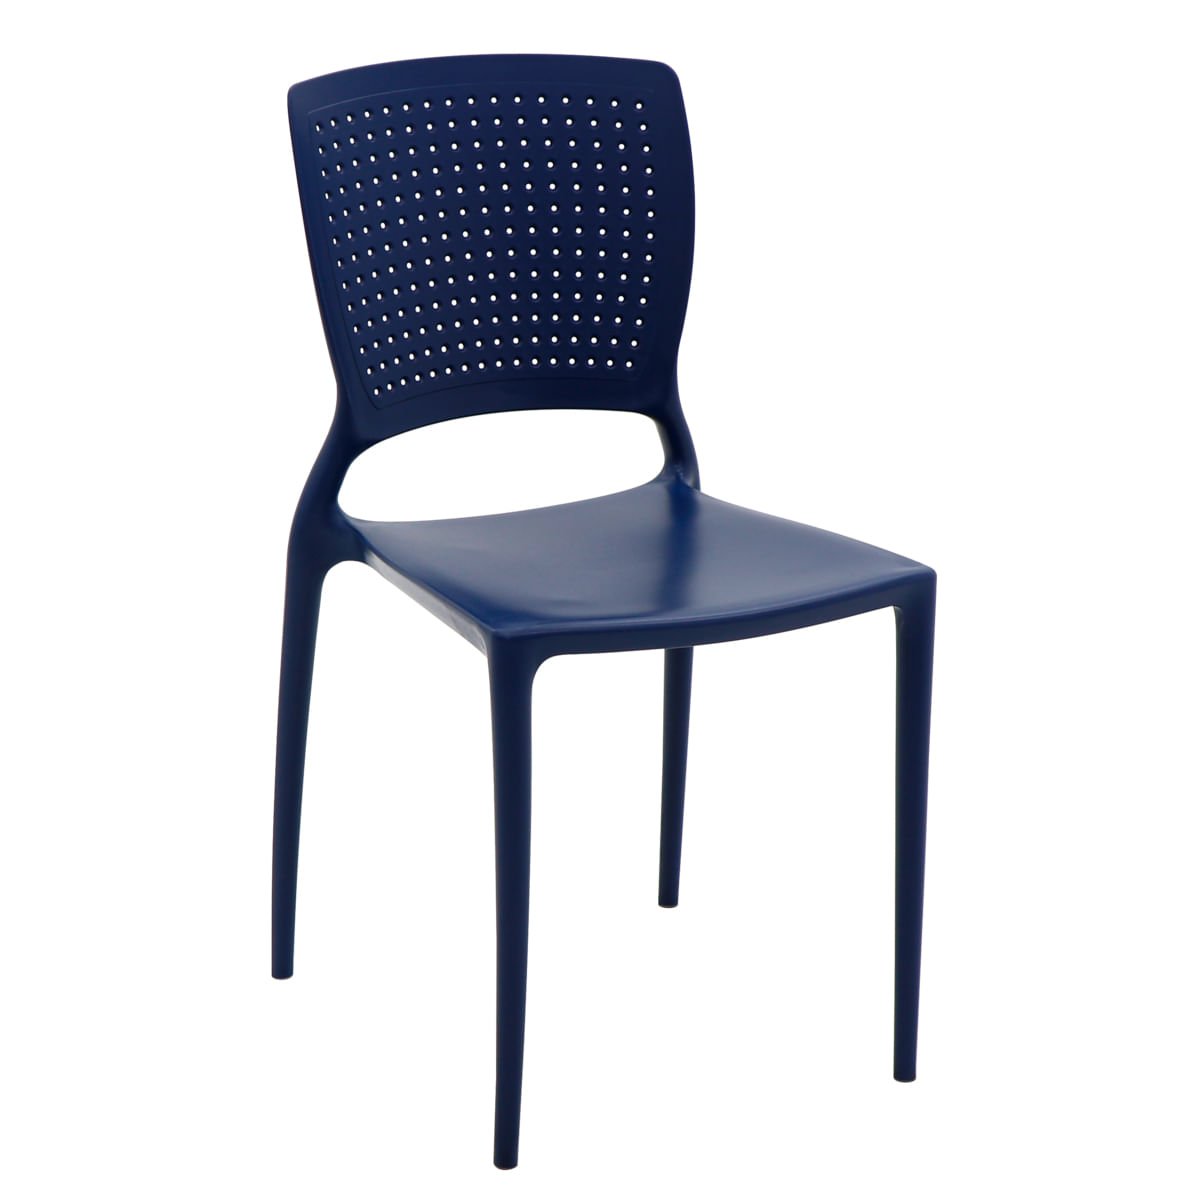 Cadeira Tramontina Safira Summa em Polipropileno e Fibra de Vidro Azul Yale - 3